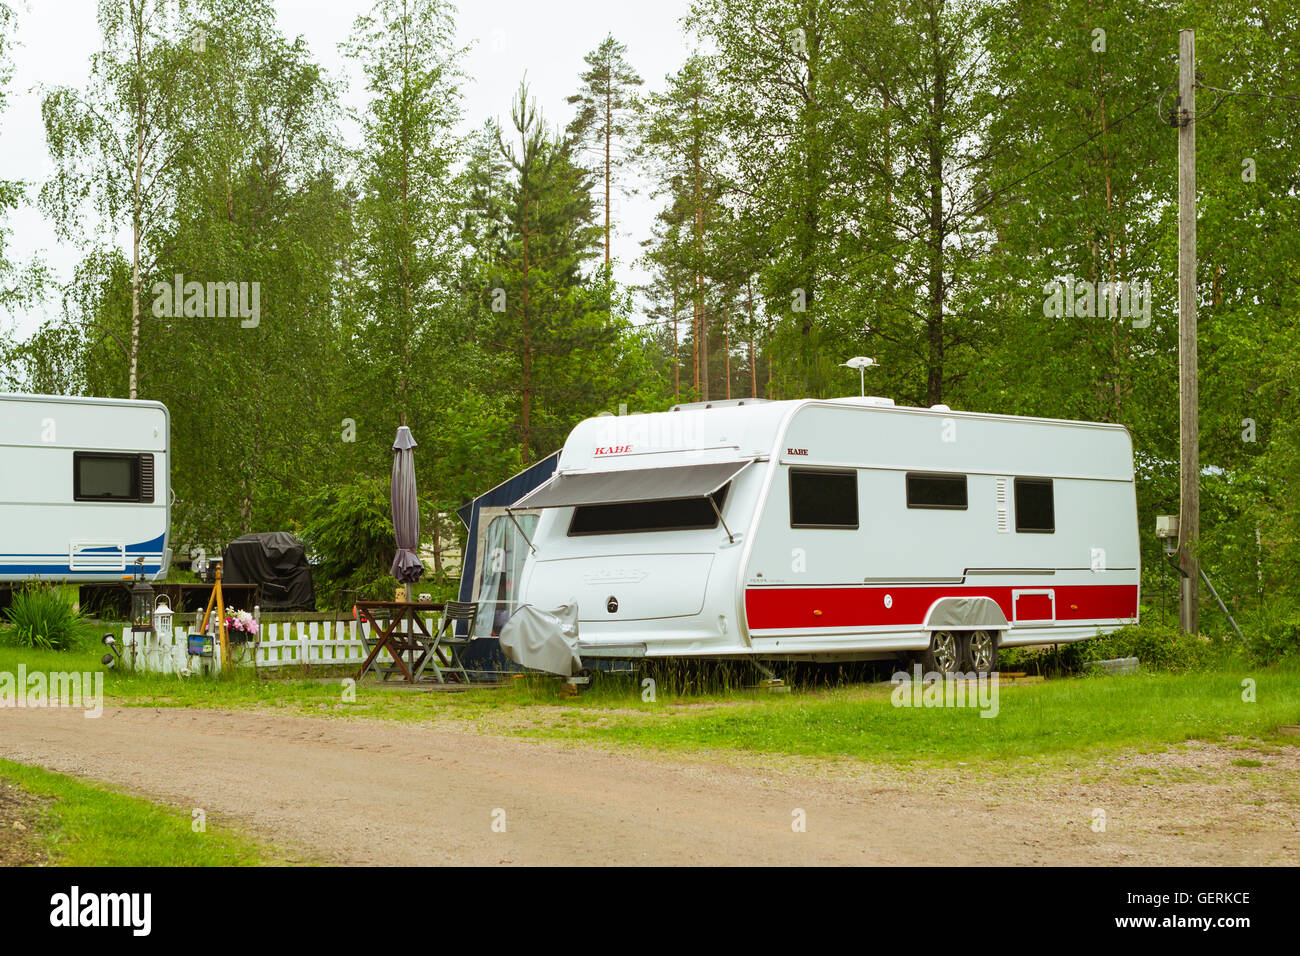 Recreación al aire libre en verano, escandinavo vacaciones en casa sobre ruedas. Camping vans y carpas estacionada en un verde prado en camping Foto de stock